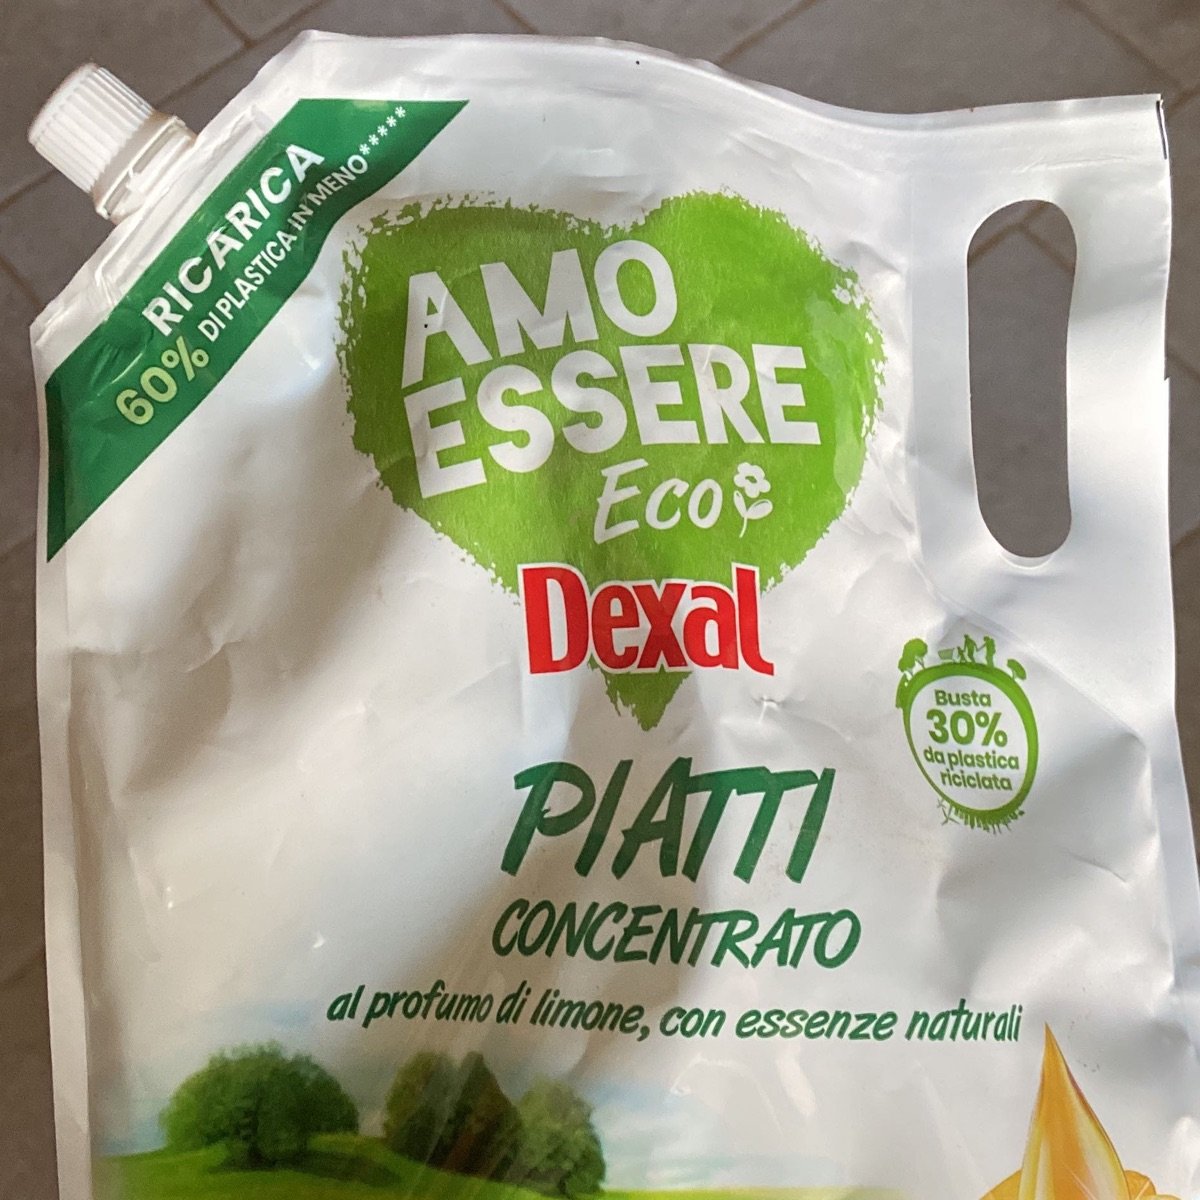 Amo essere eco dexal Piatti concentrato Review | abillion